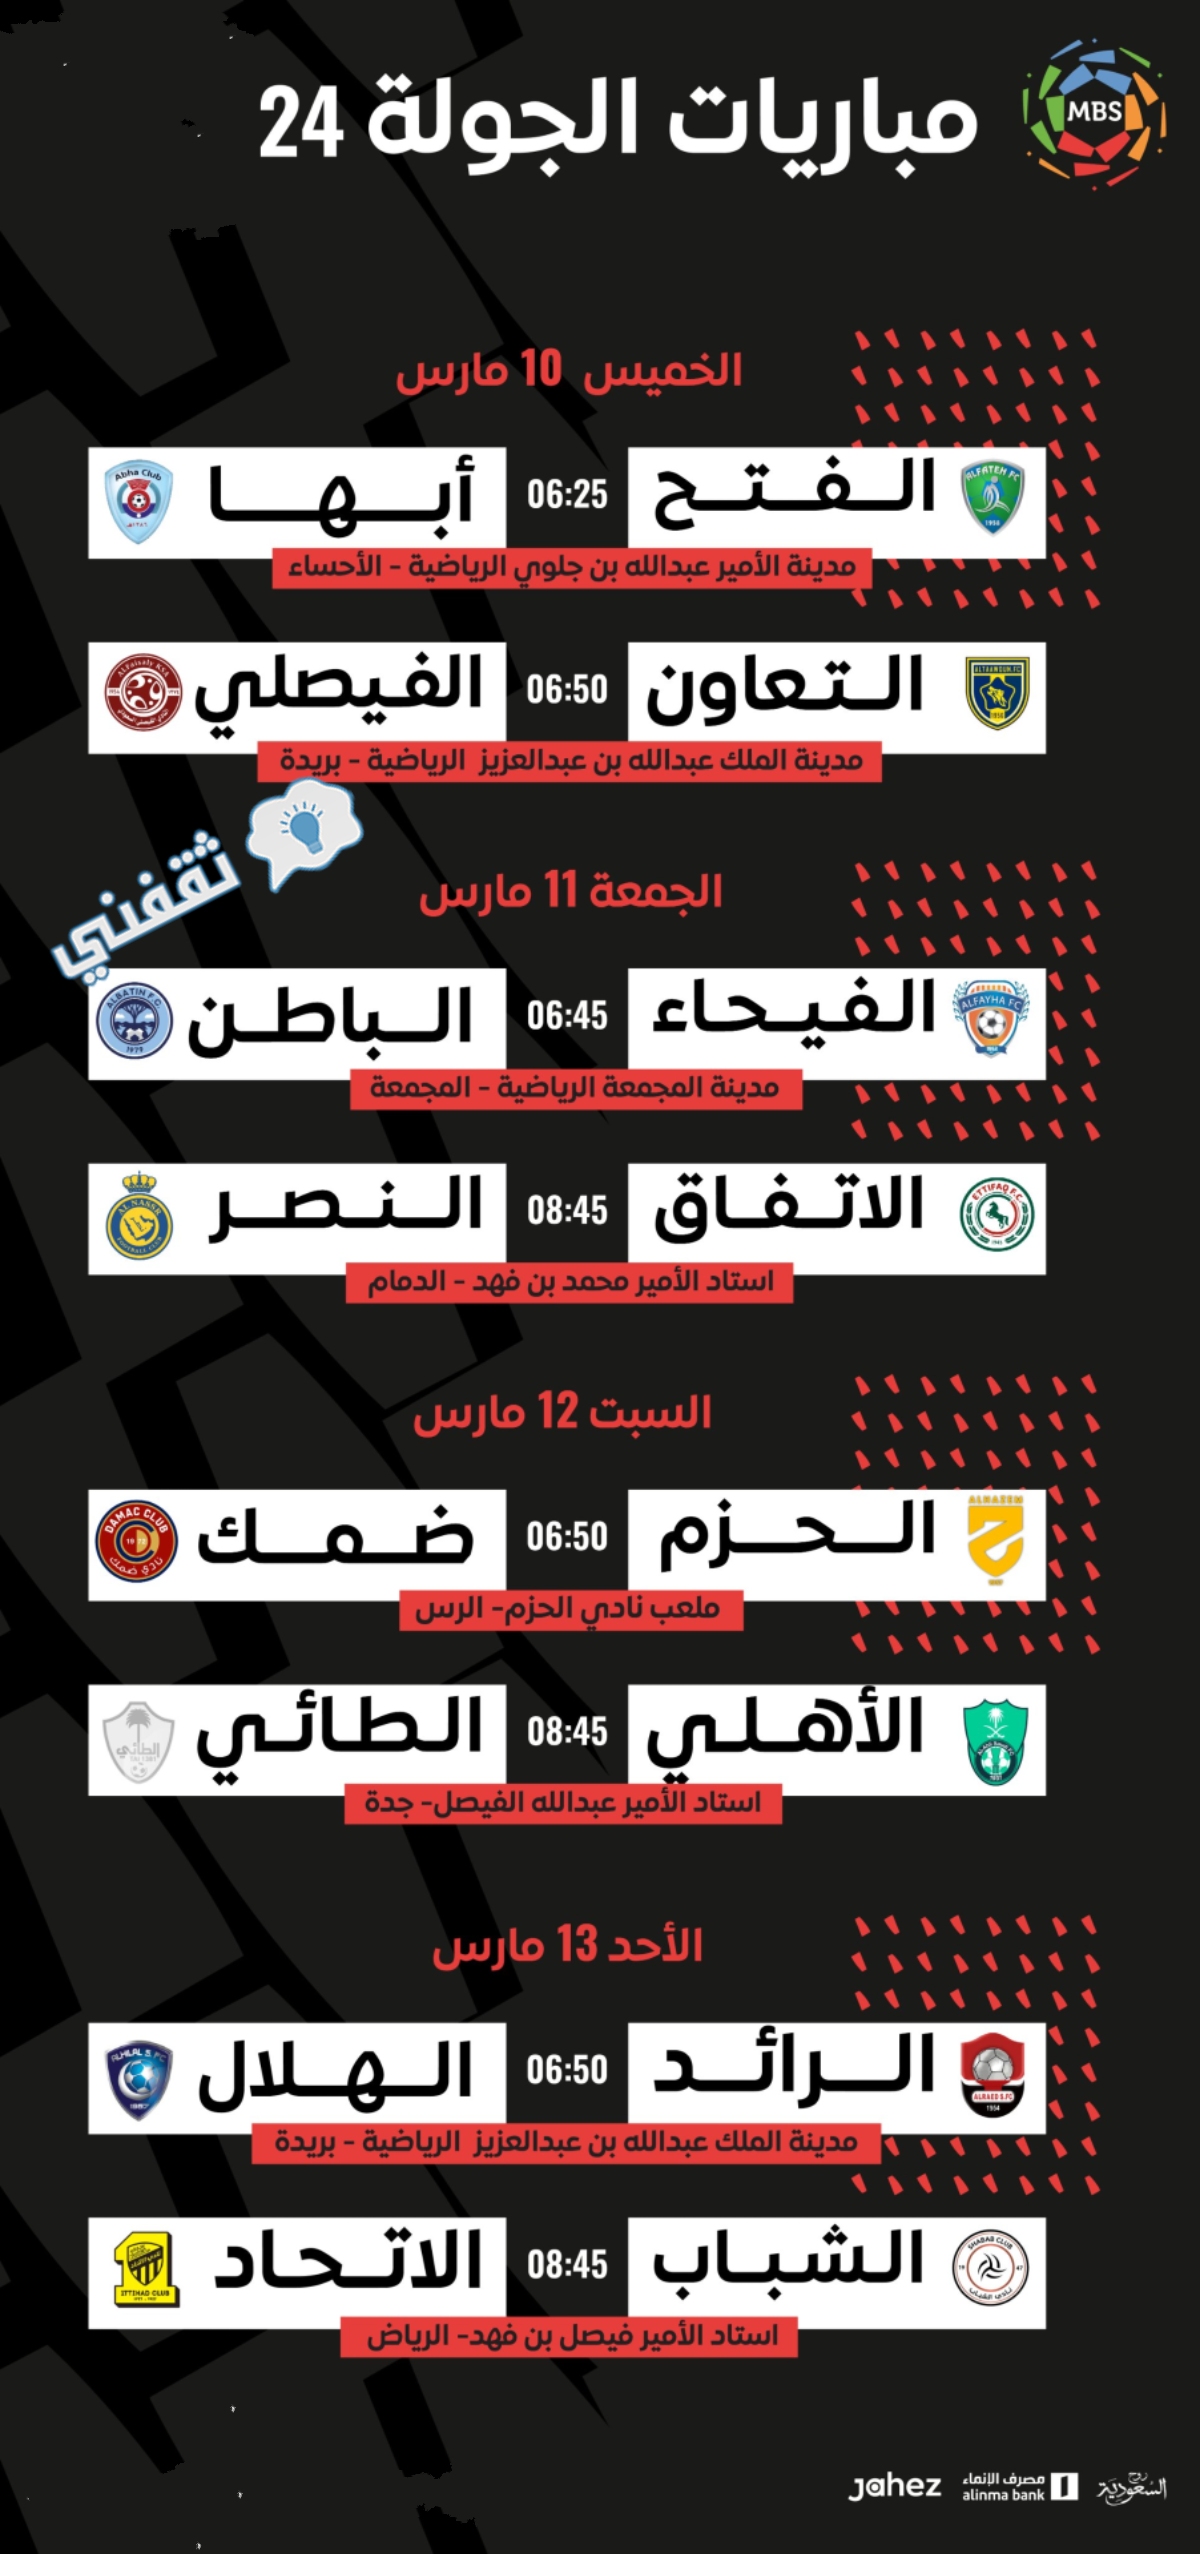 الحضور الجماهيري في الدوري السعودي